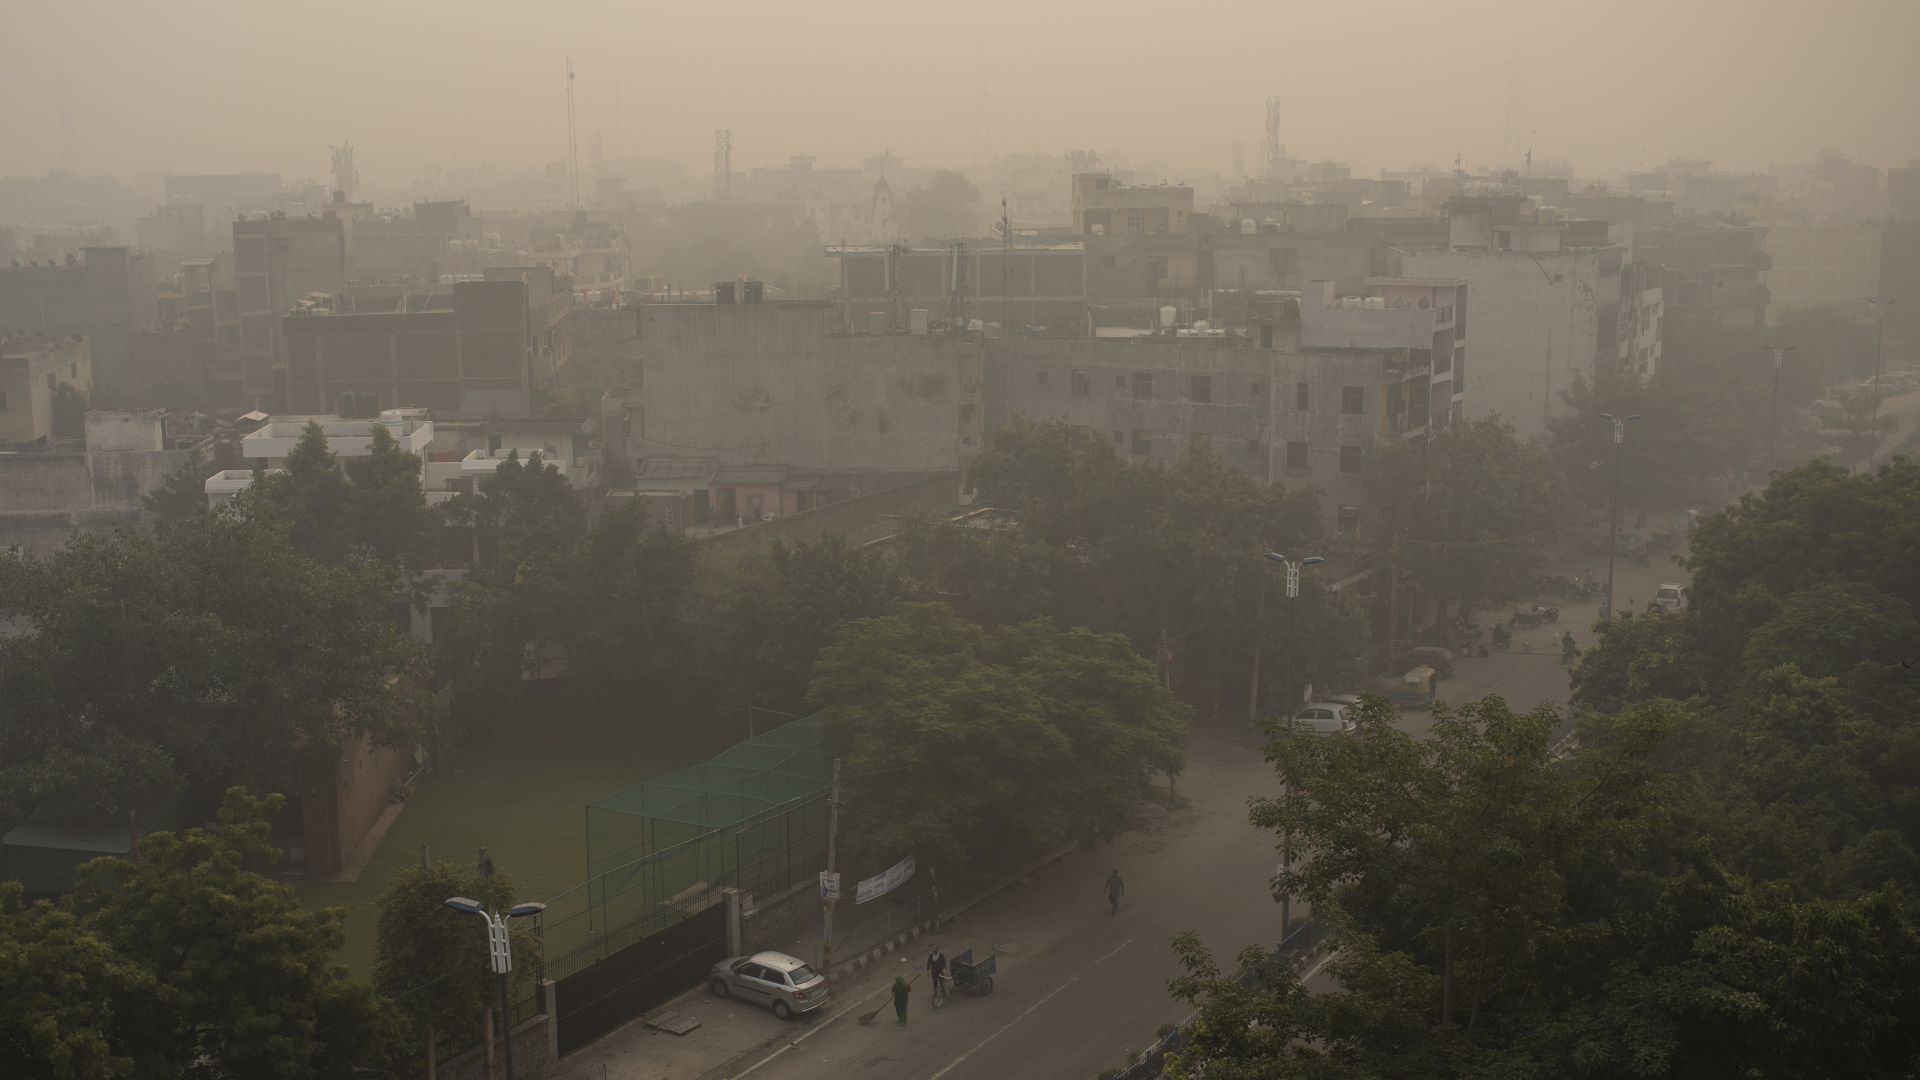 Morgendlicher Dunst und Smog umhüllen die Skyline in Neu-Delhi. Die Metropolregion rund um die indische Hauptstadt war seit mehr als einer Woche in grauen und stinkigen Smog gehüllt. | dpa